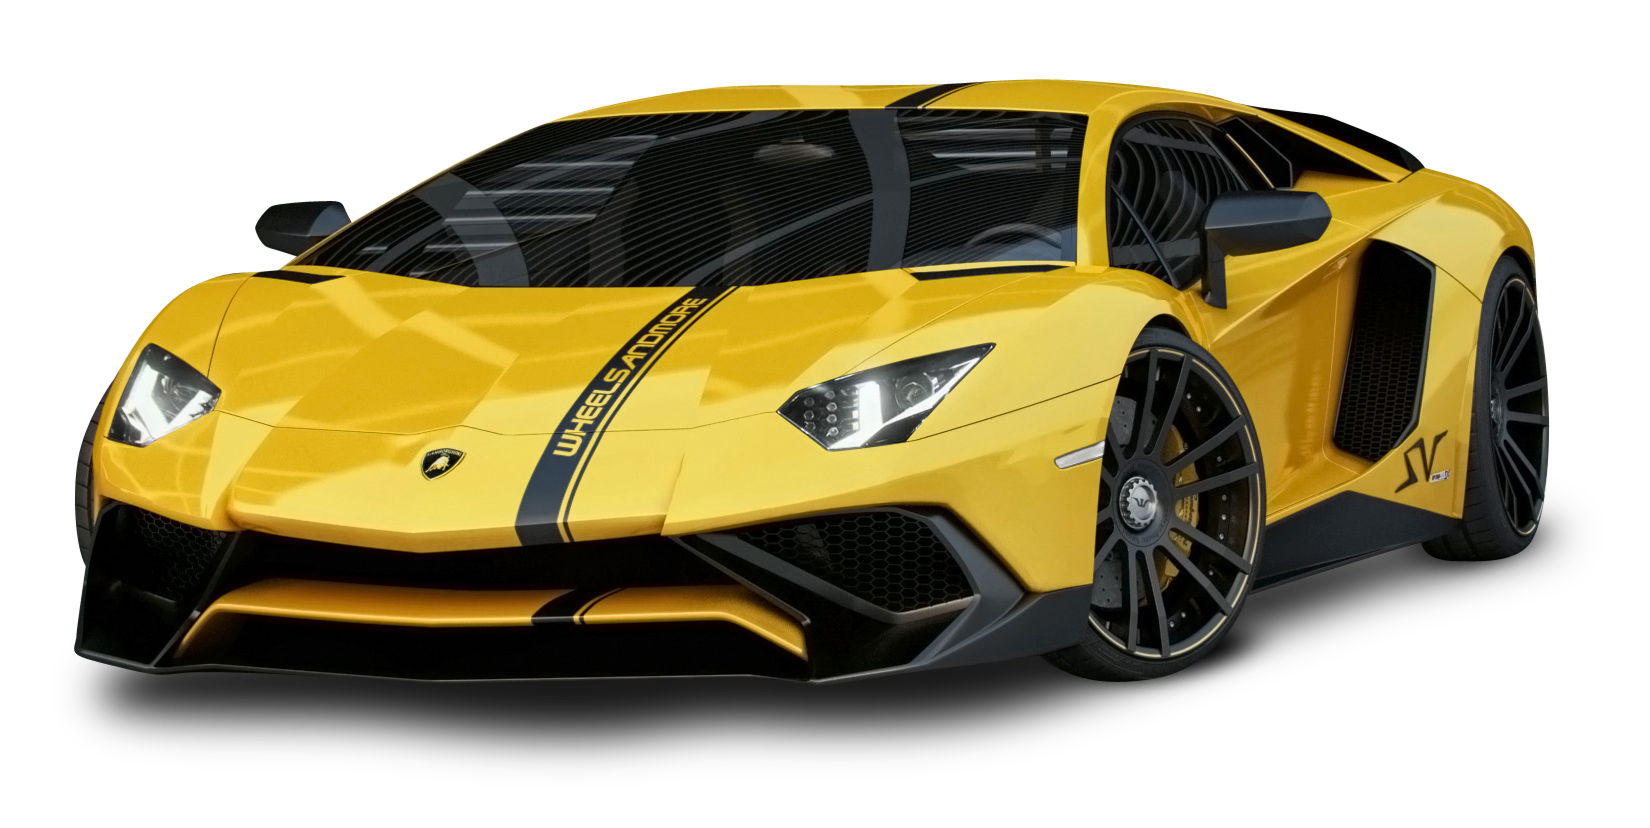 Yellow Lamborghini Aventador Car PNG Image - PurePNG ...